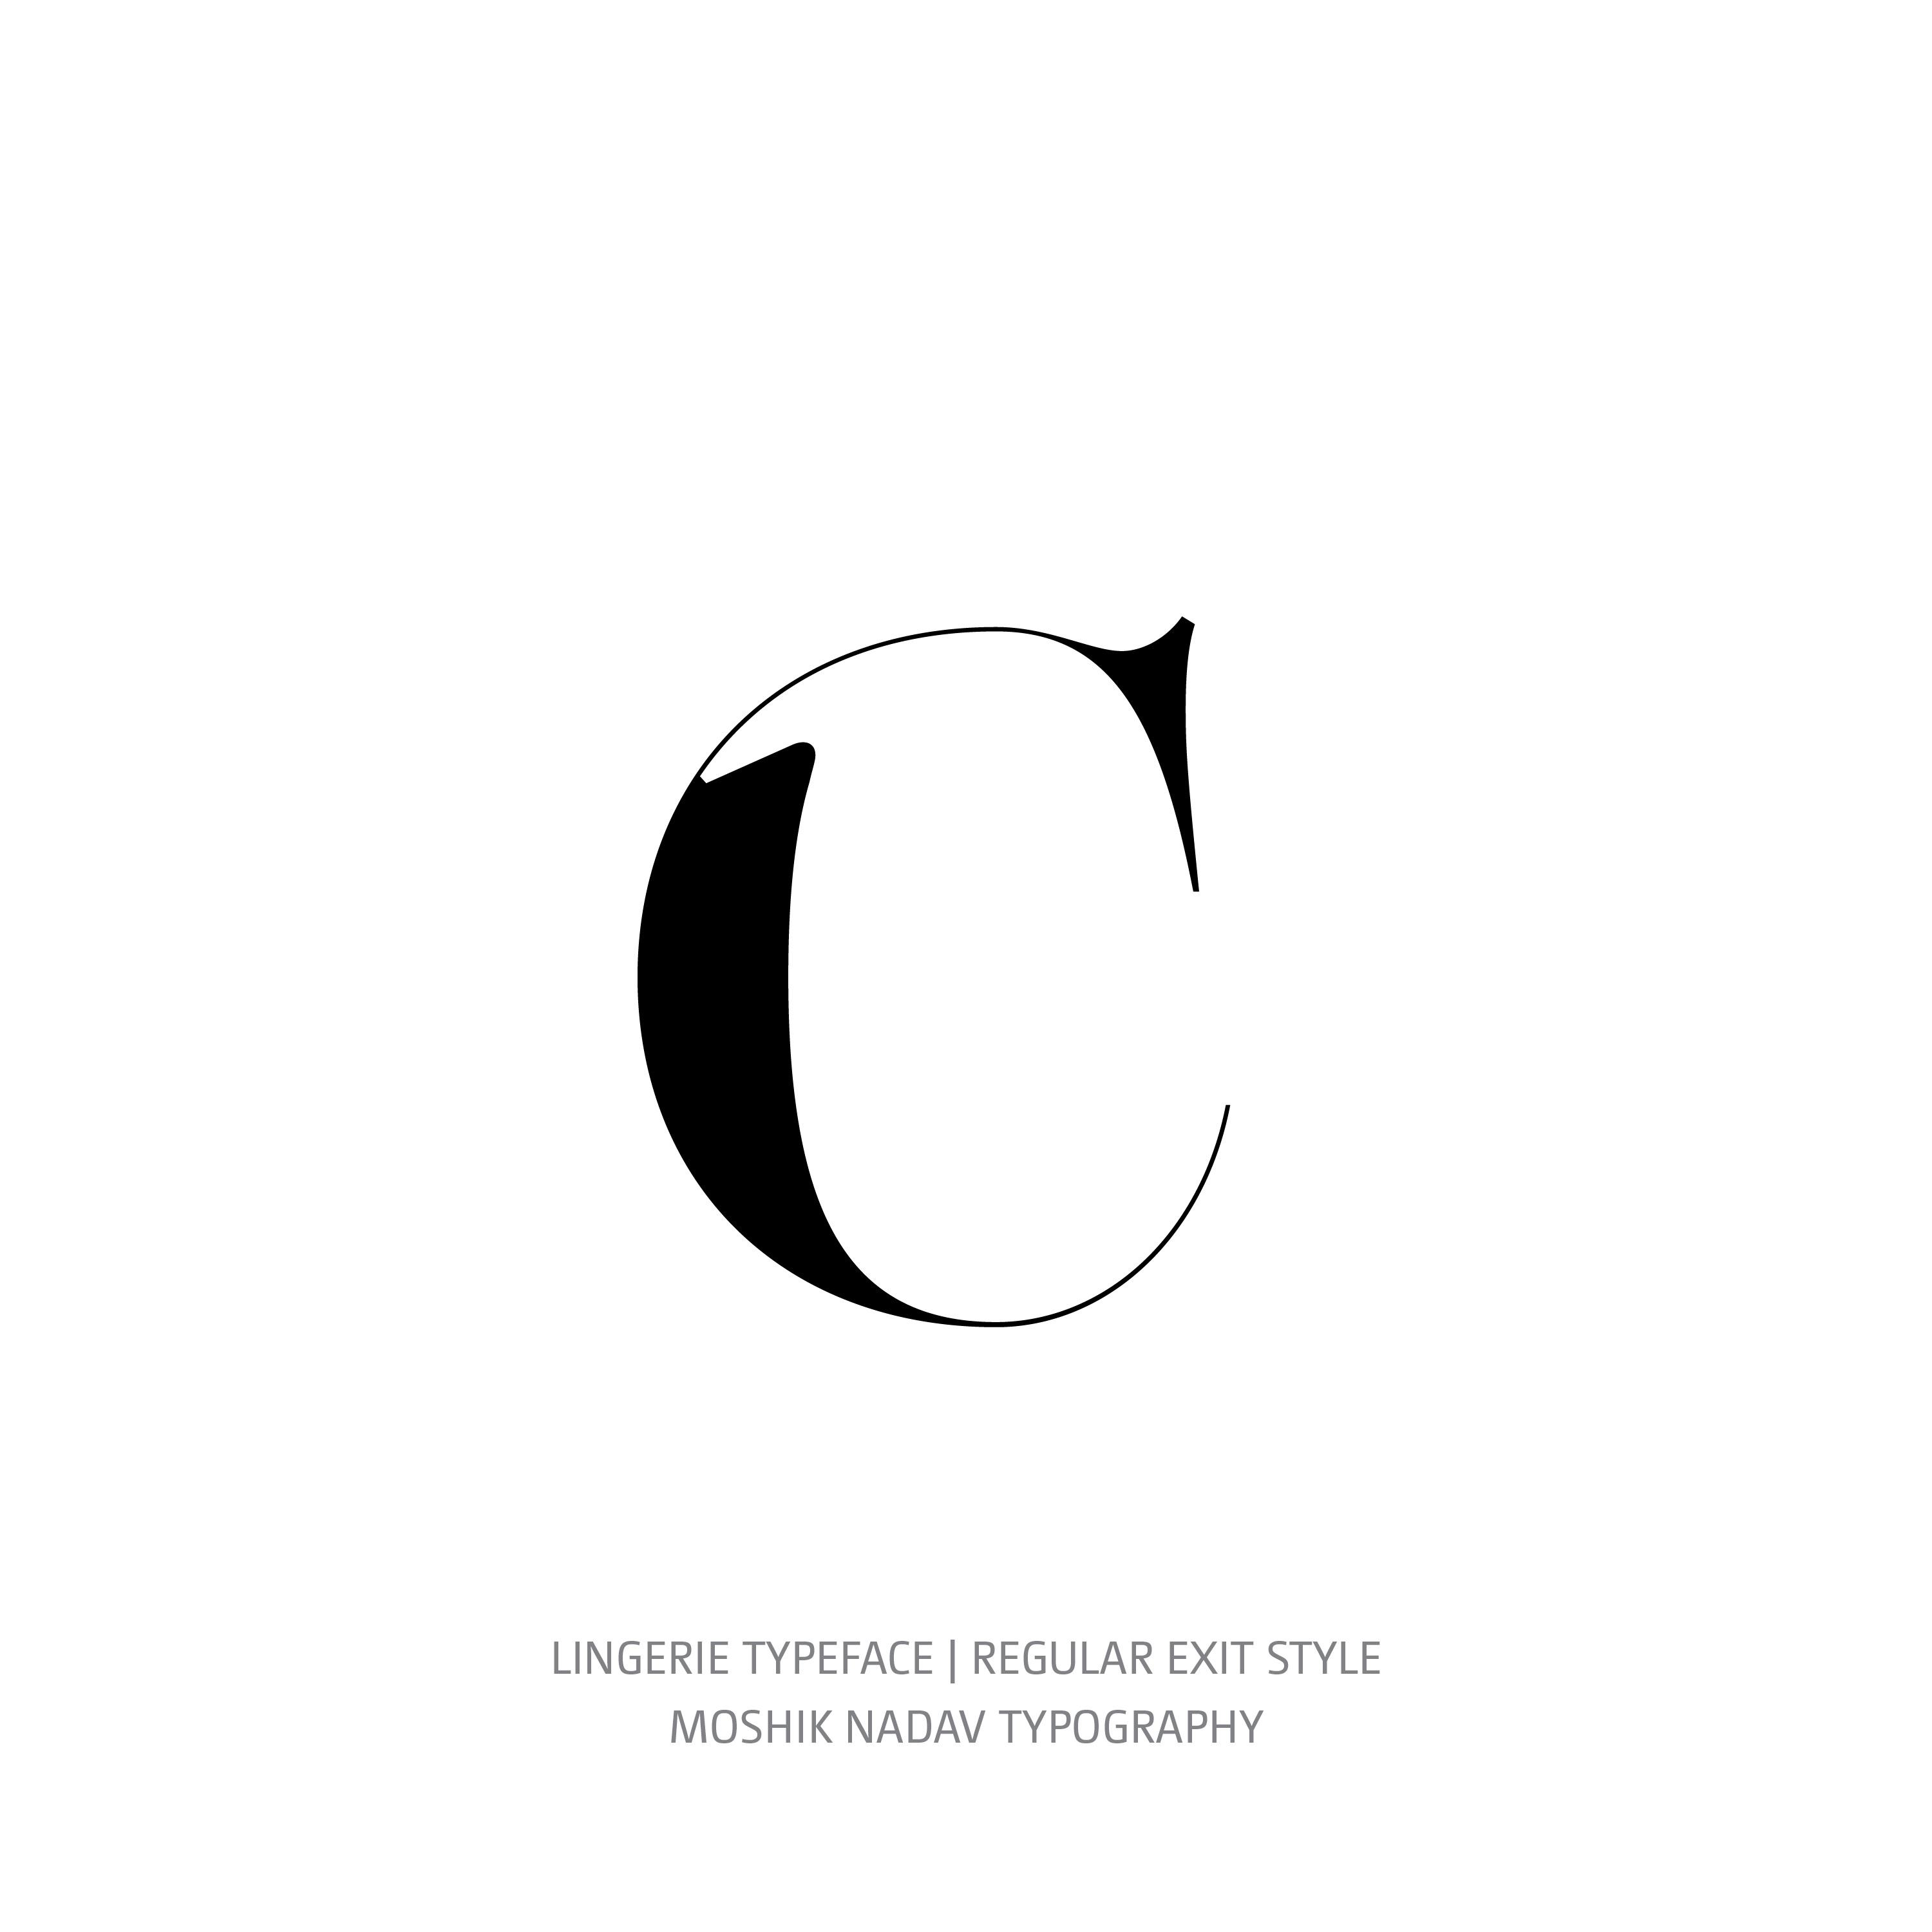 Lingerie Typeface Regular Exit c